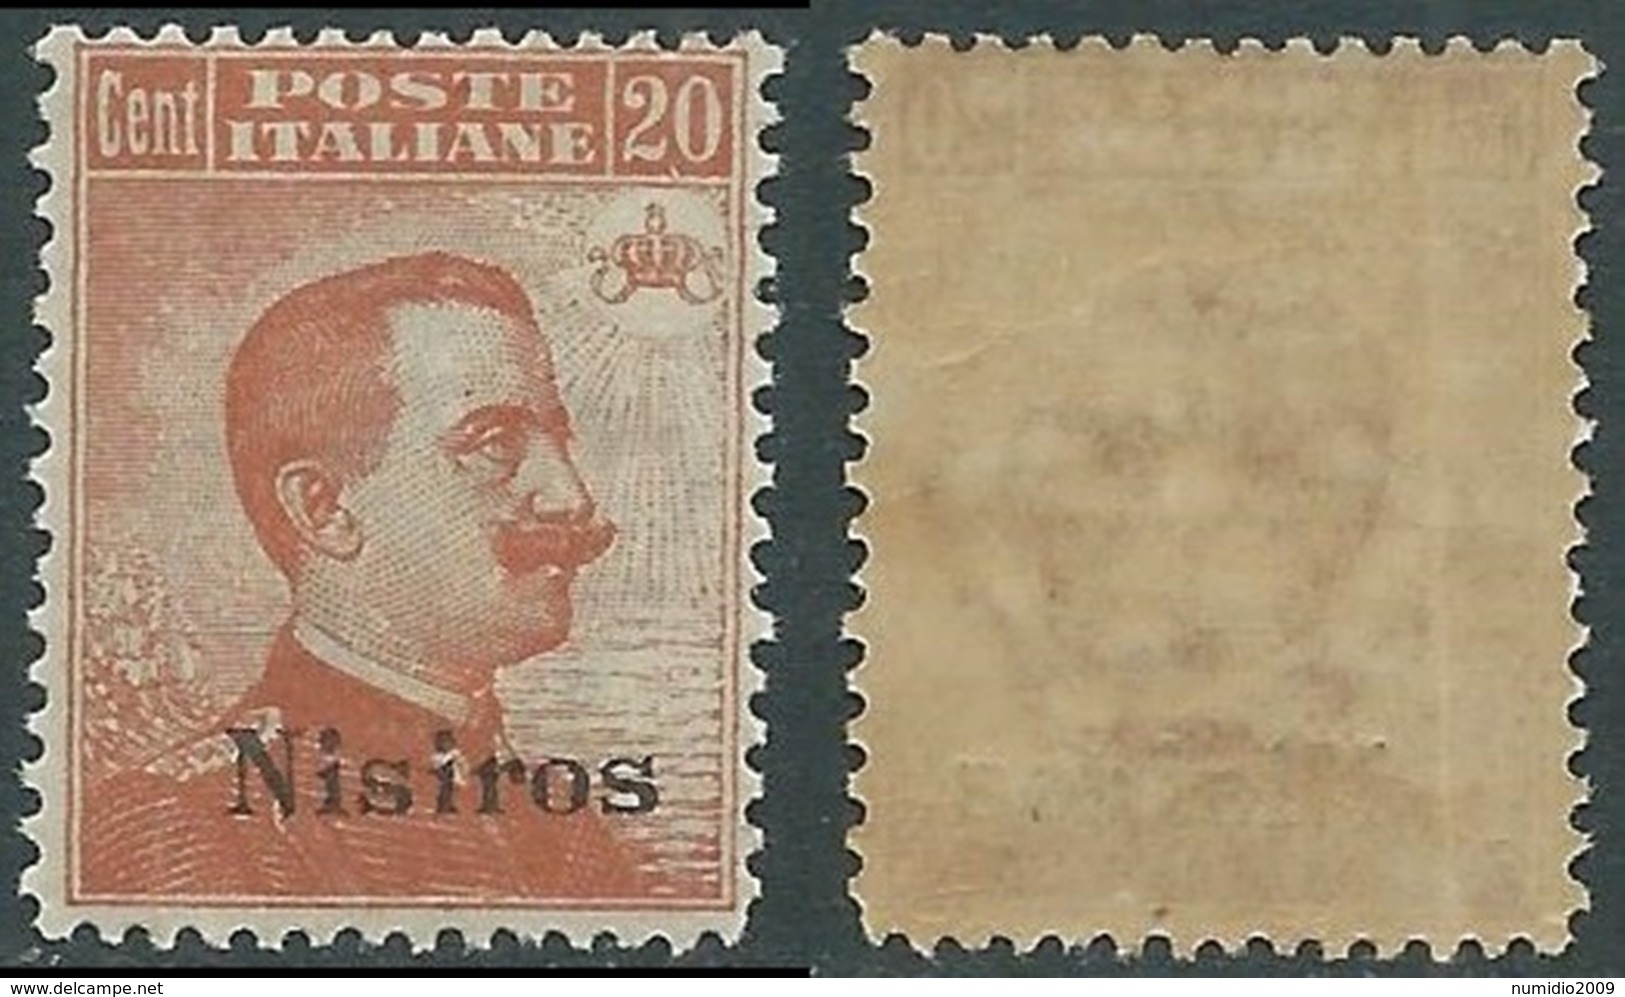 1921-22 EGEO NISIRO EFFIGIE 20 CENT MNH ** - E154-3 - Egée (Nisiro)